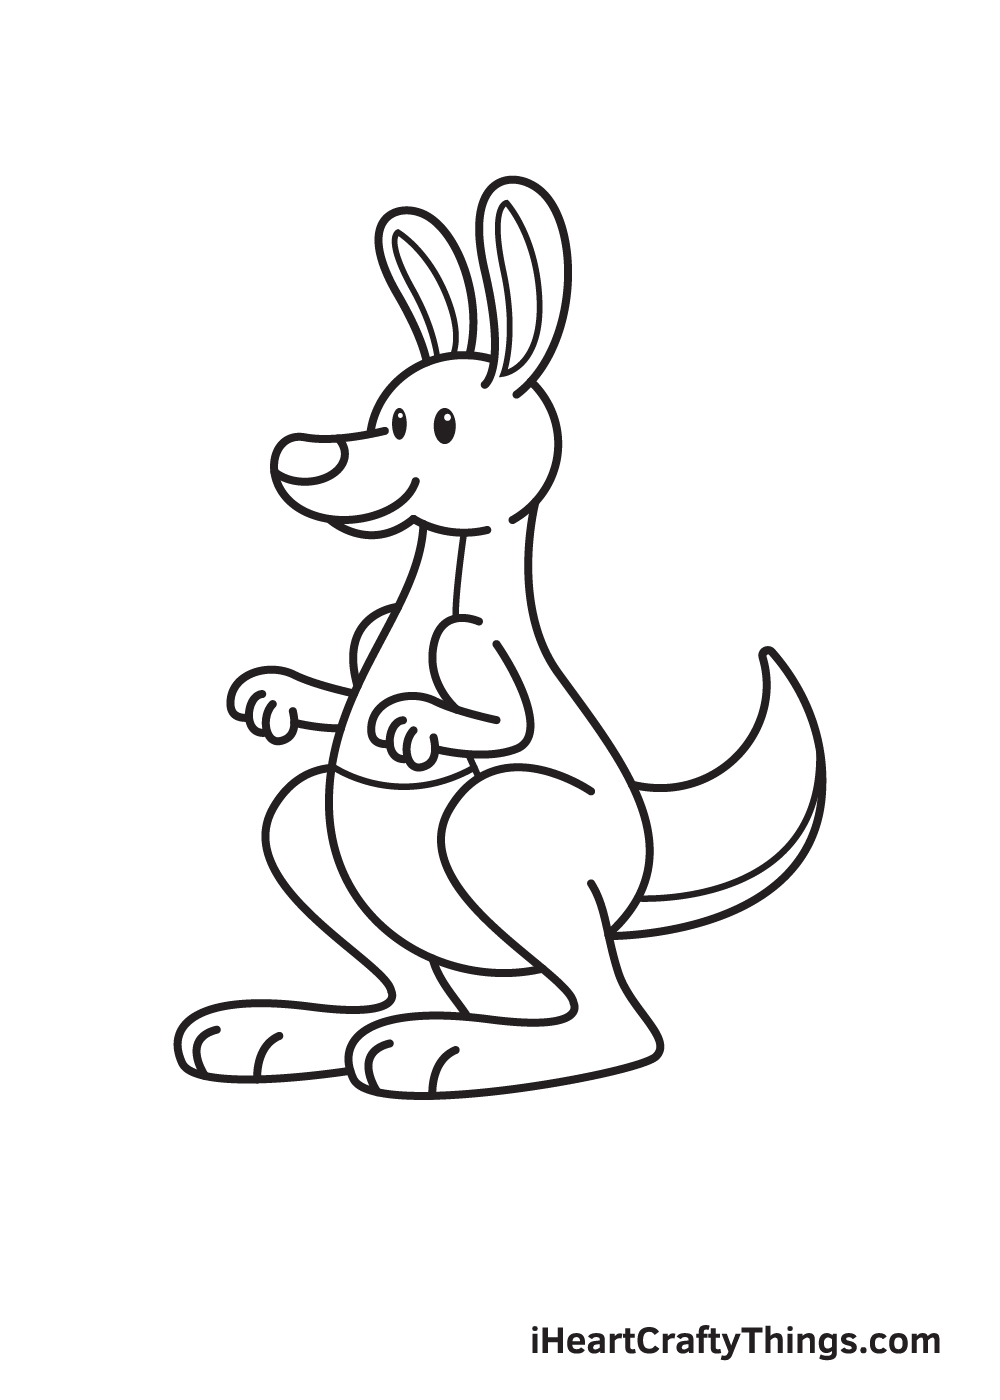 kangaroo drawing step 9